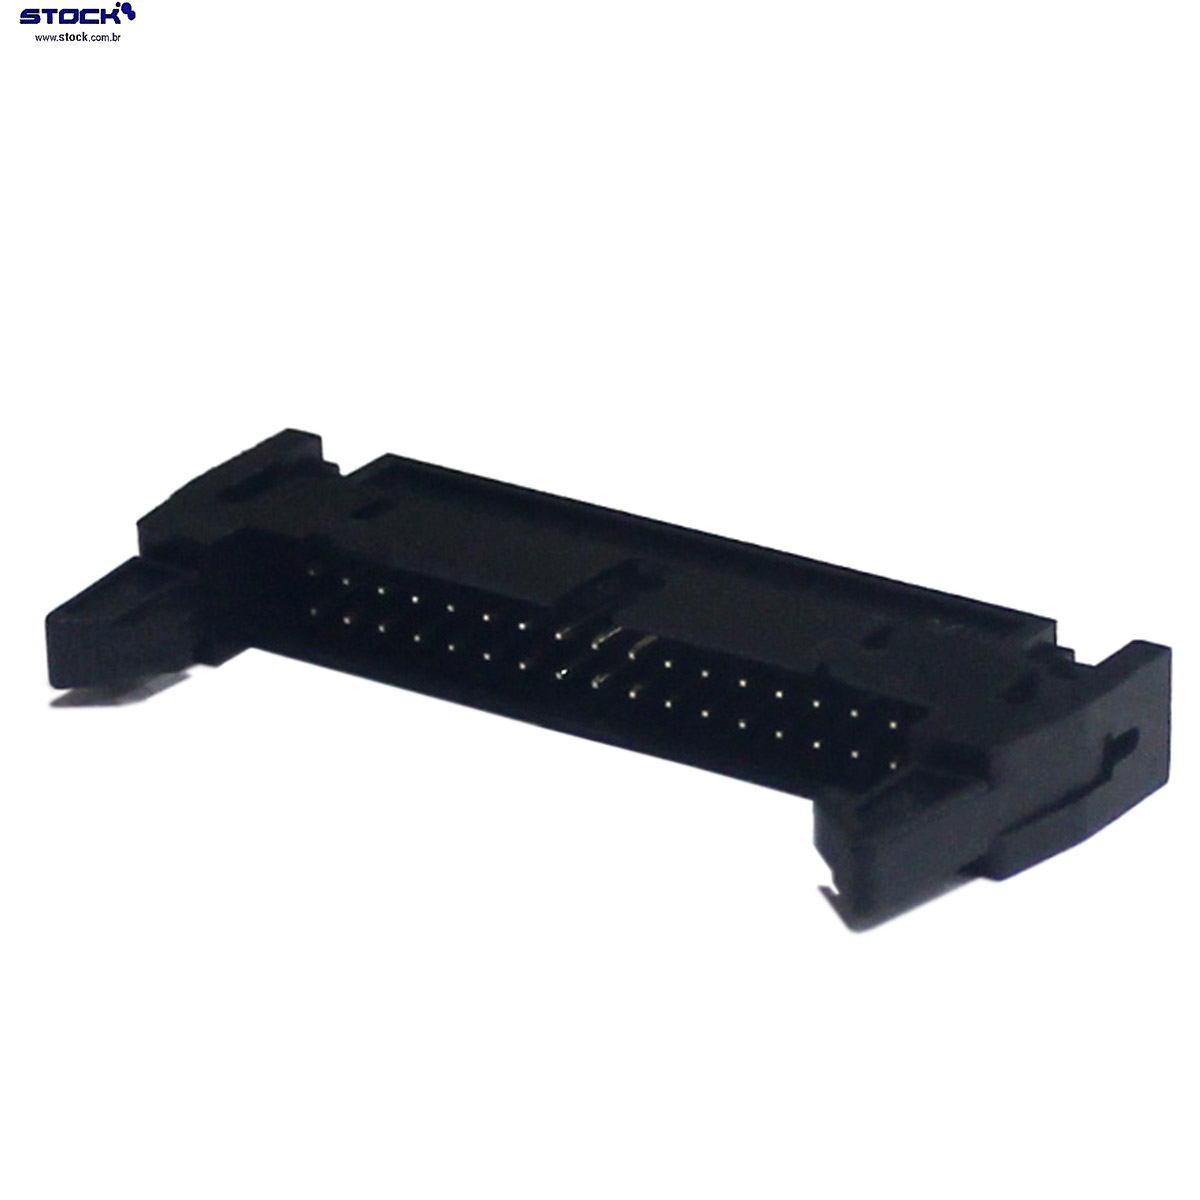 IDC Box Header com Ejetor longo p/ PCI 34 Pinos Macho Pitch 2,54mm - Fileira dupla – 02x17 180 Graus - Preto